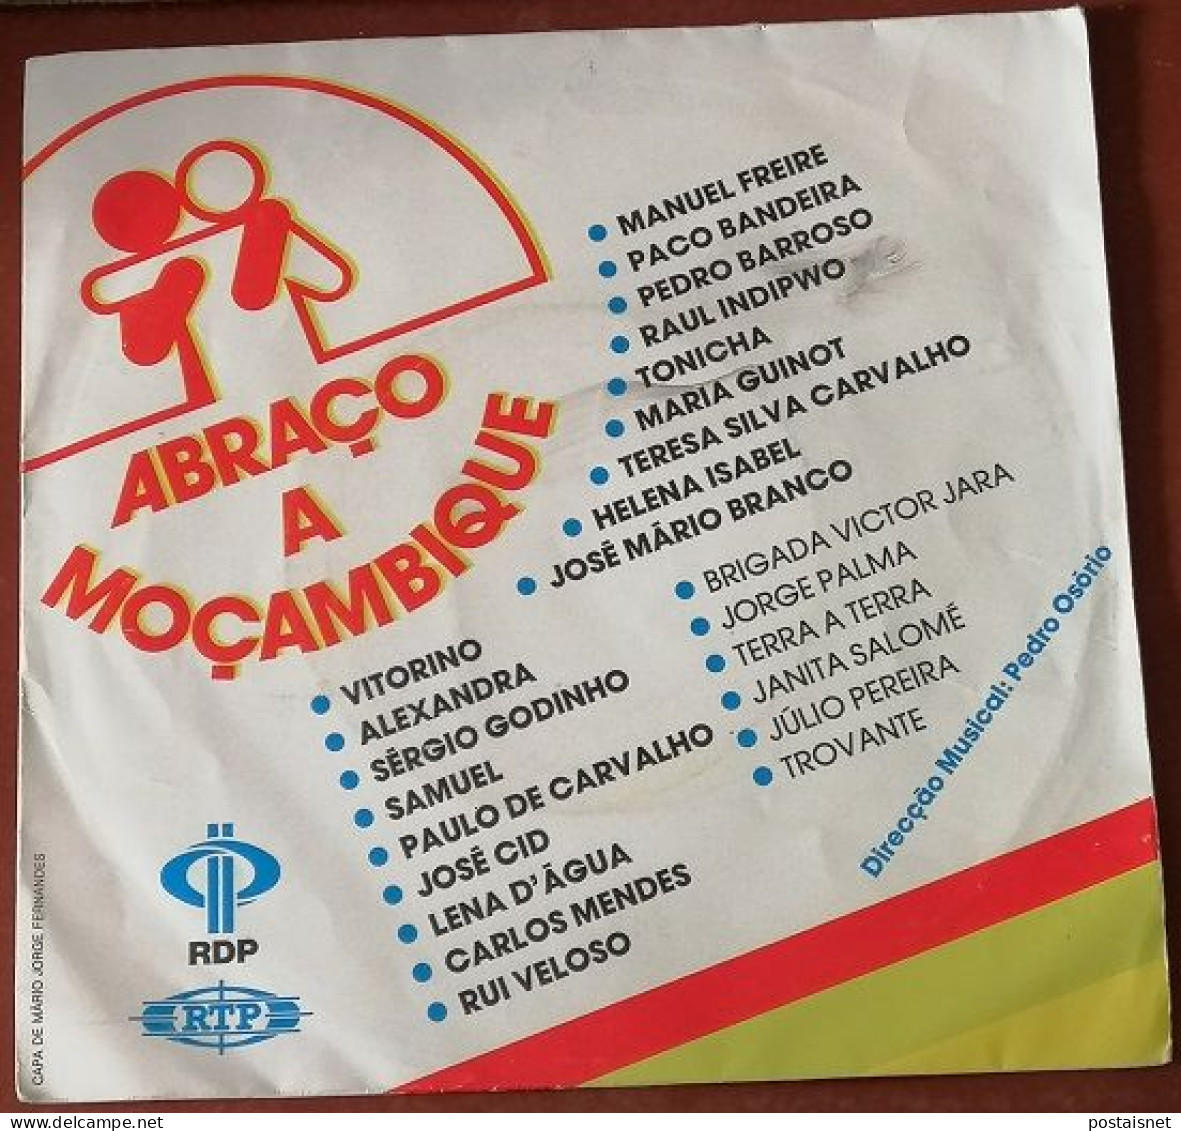 Single Abraço A Moçambique – 1985 – RDP E RTP - Musiche Del Mondo